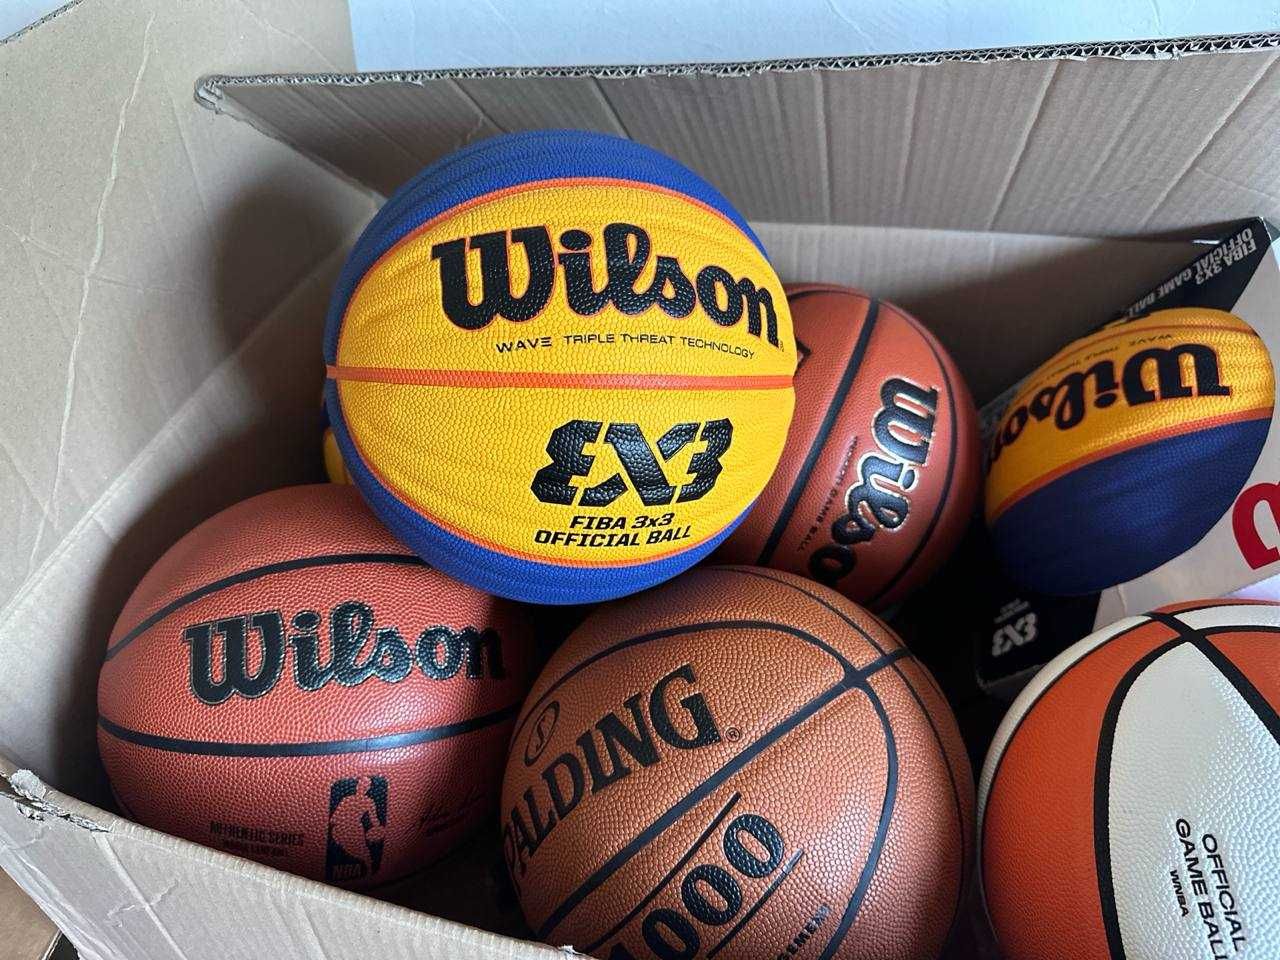 WILSON FIBA 3x3 Official Game Basketball! Новый в коробке!